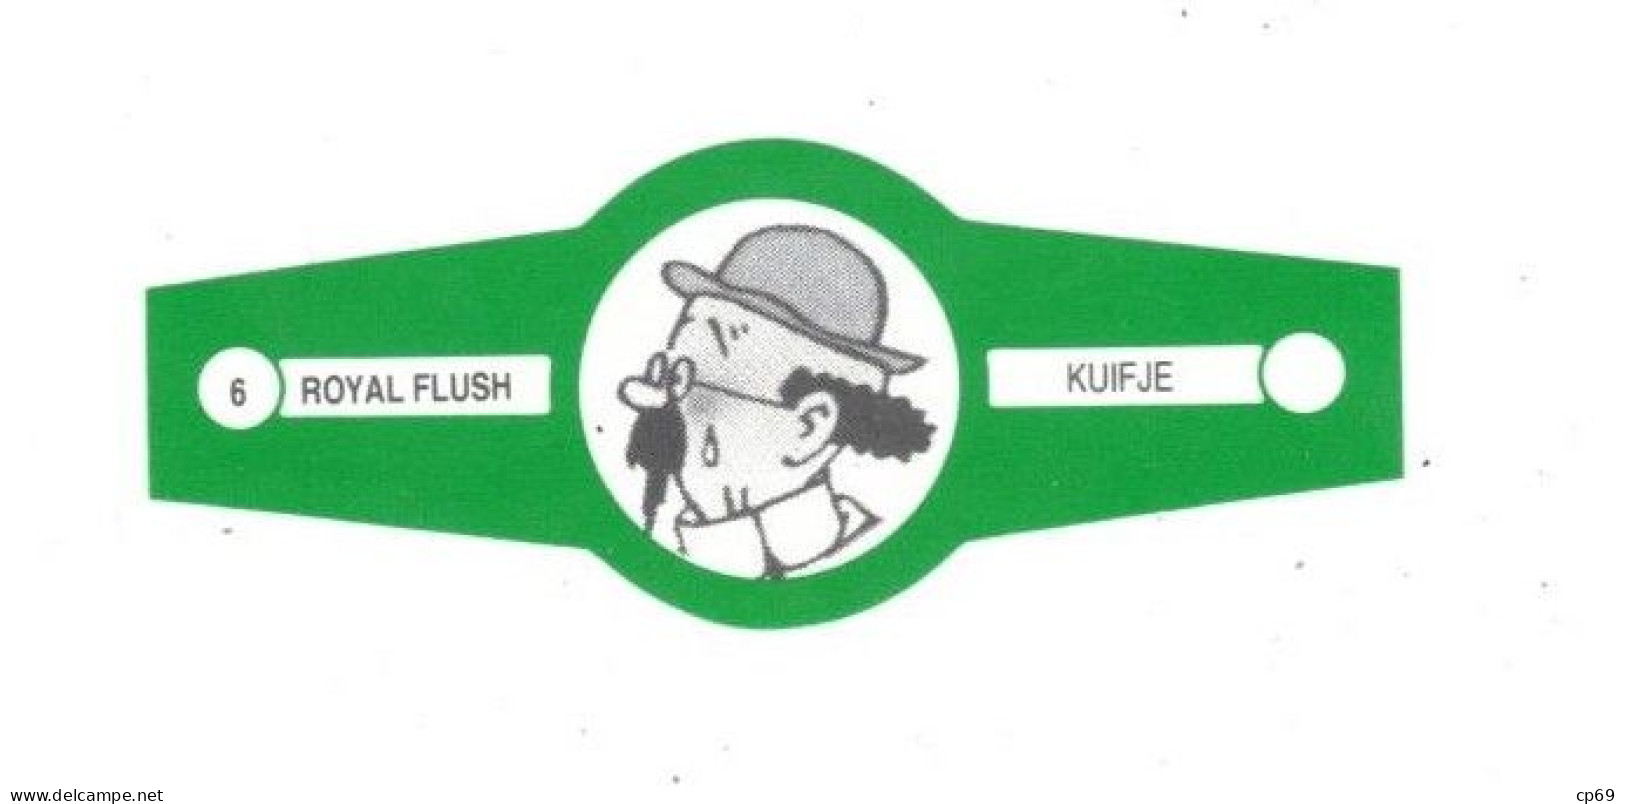 6) Bague De Cigare Série Tintin Verte Royal Flush Kuifje Professeur Tournesol En Superbe.Etat - Objets Publicitaires